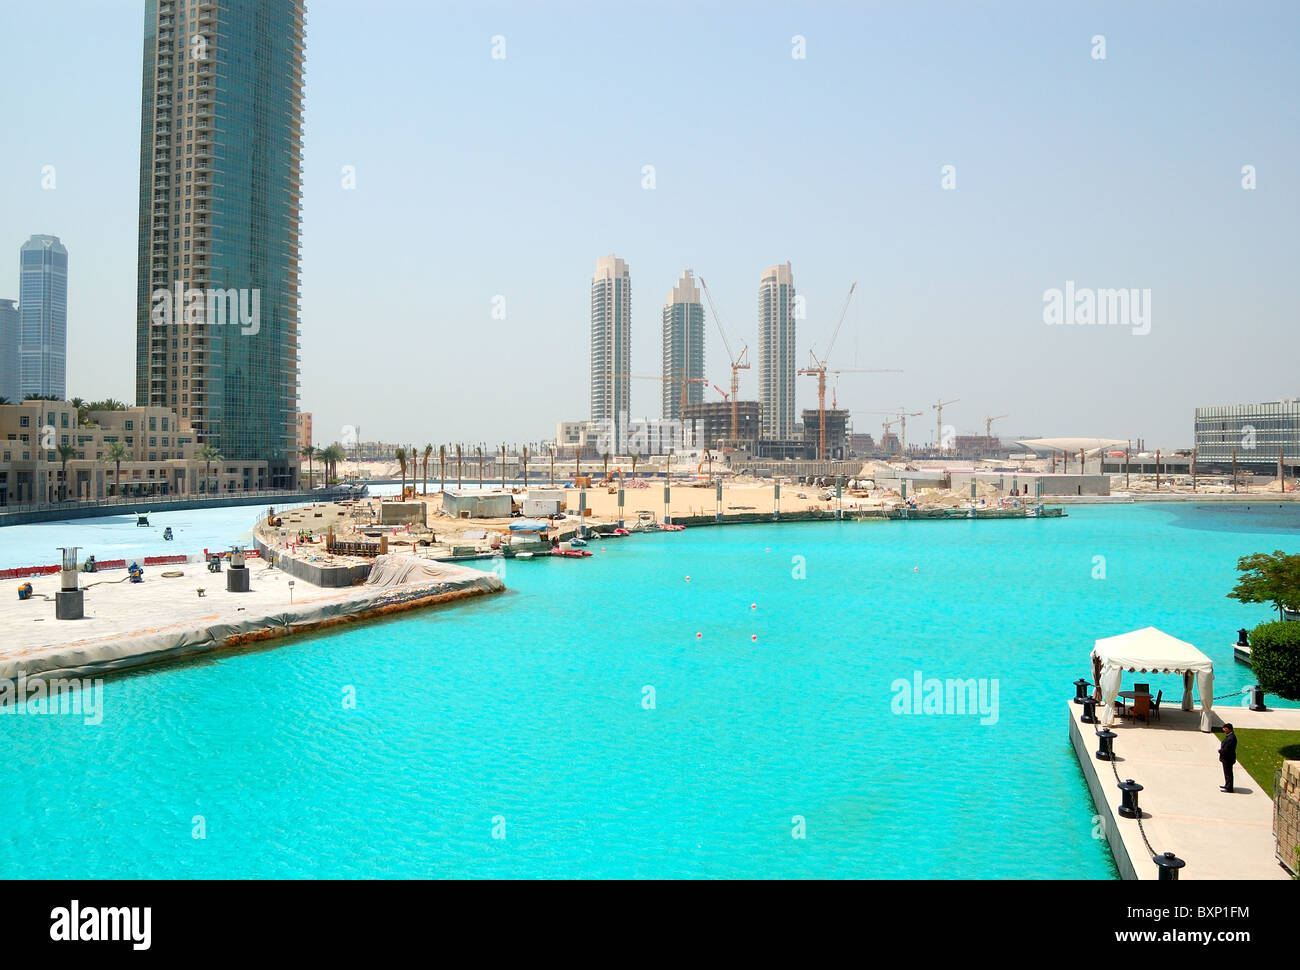 Las obras civiles en el centro de Dubai, cerca de Burj Dubai (Burj Khalifa) rascacielos y lago artificial con fuentes bailarinas Foto de stock